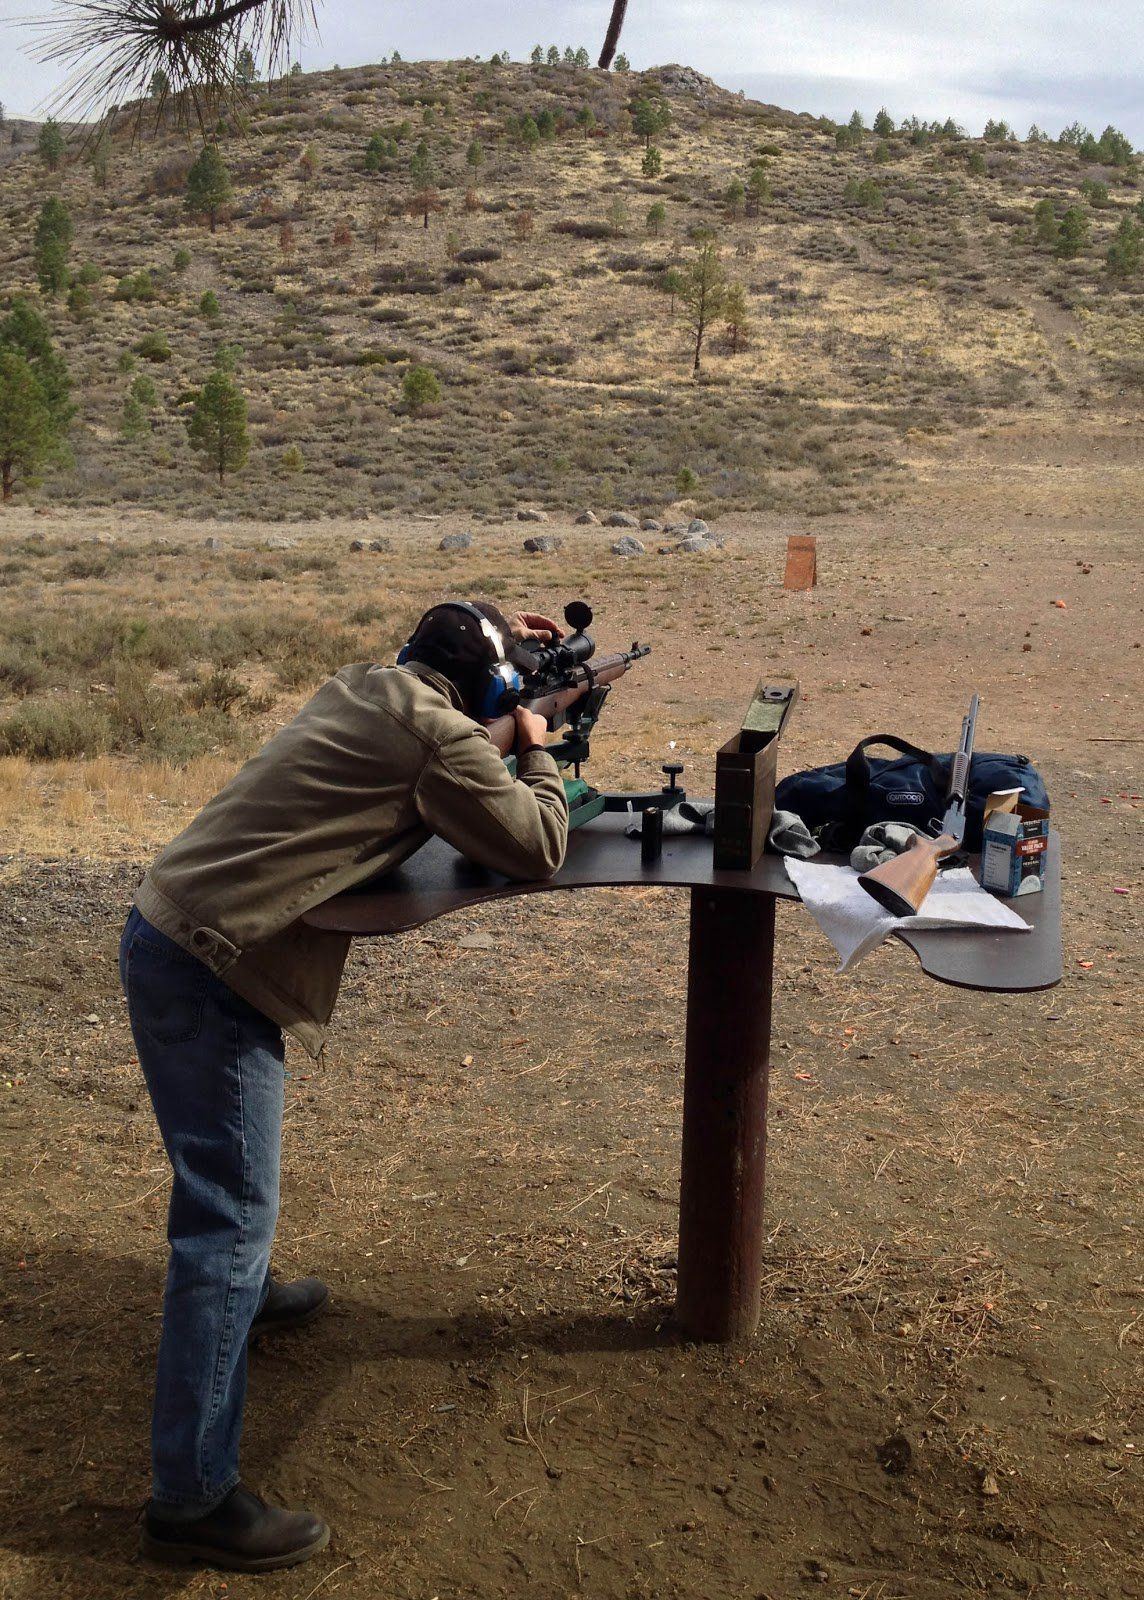 Lake arrowhead shooting range